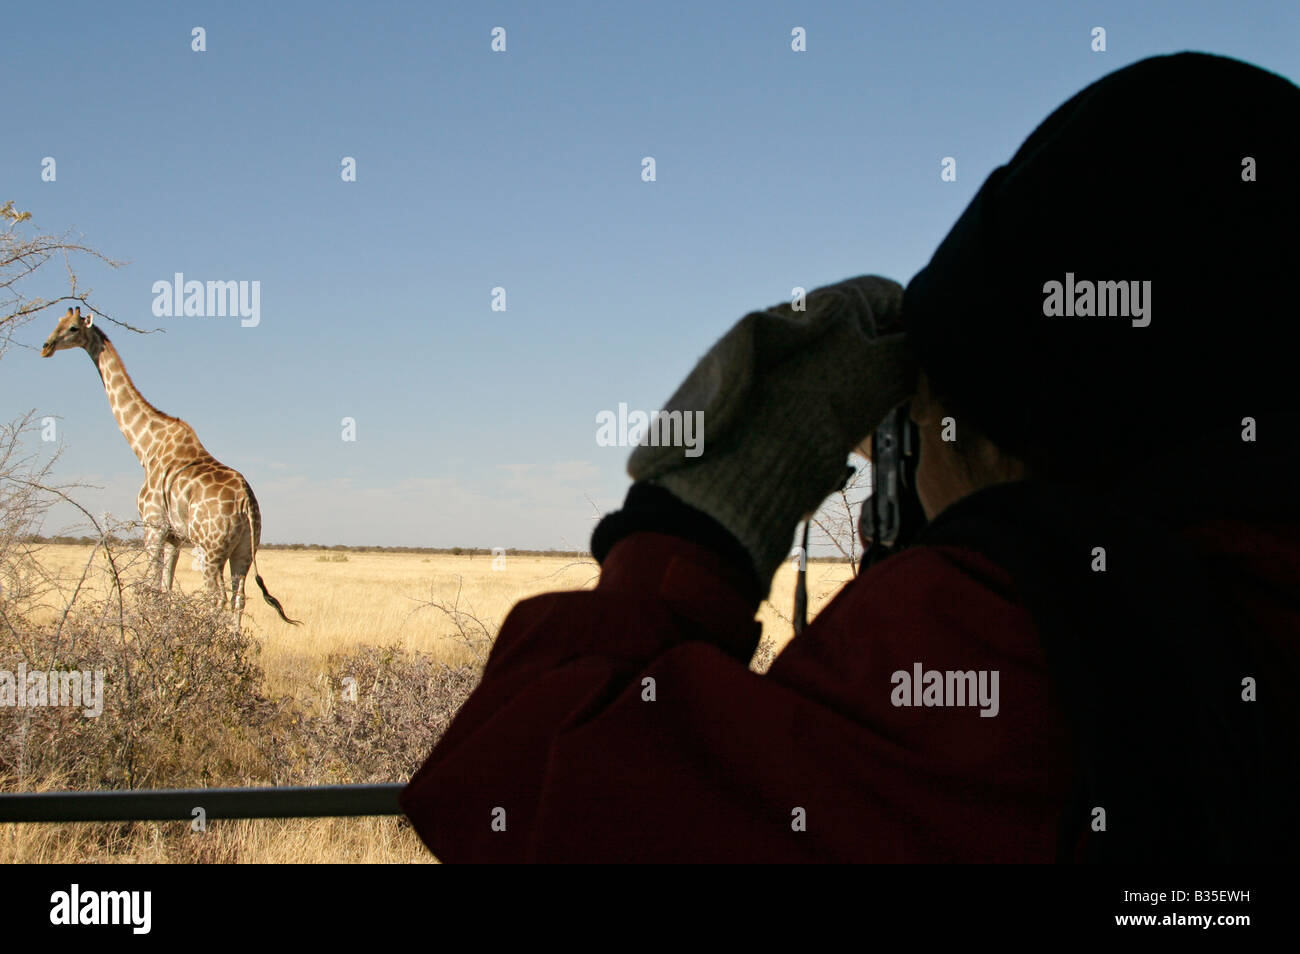 Regarder [girafe Giraffa camelopardalis] de camion safari dans le parc d'Etosha Wildlife park en Namibie Afrique du Sud Banque D'Images